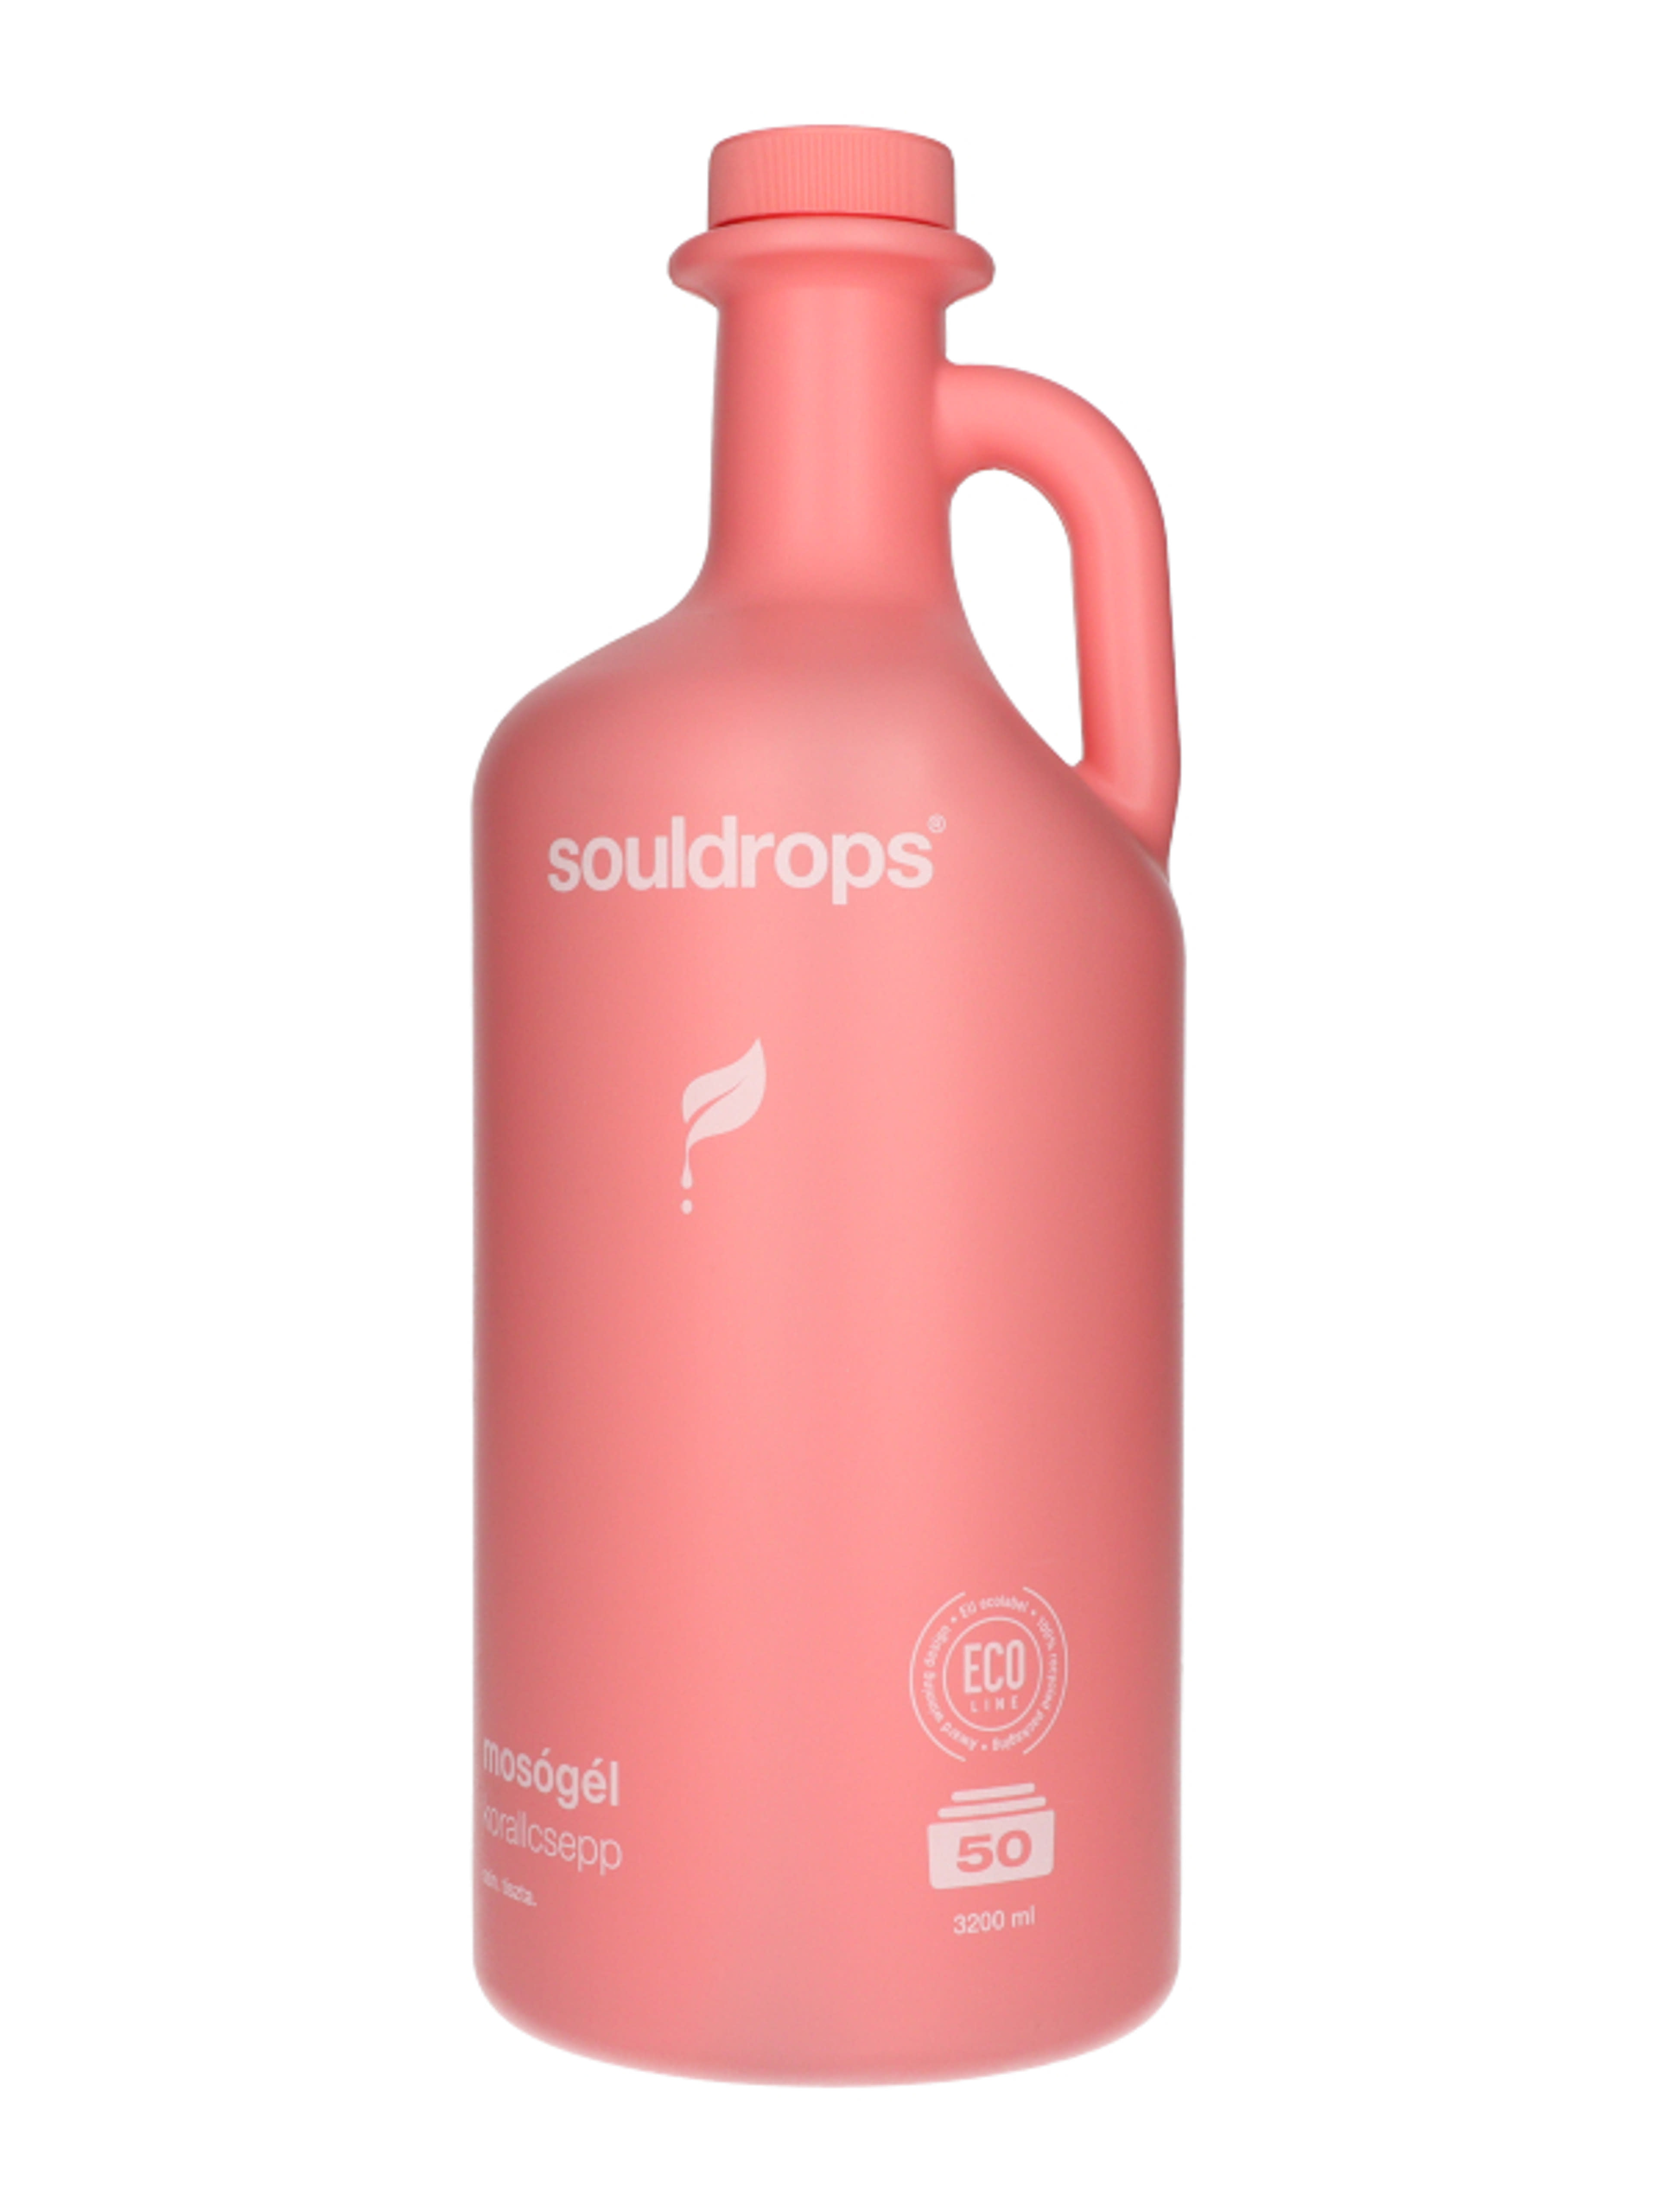 Souldrops Korallcsepp univerzális mosógél 50 mosás - 3200 ml-2